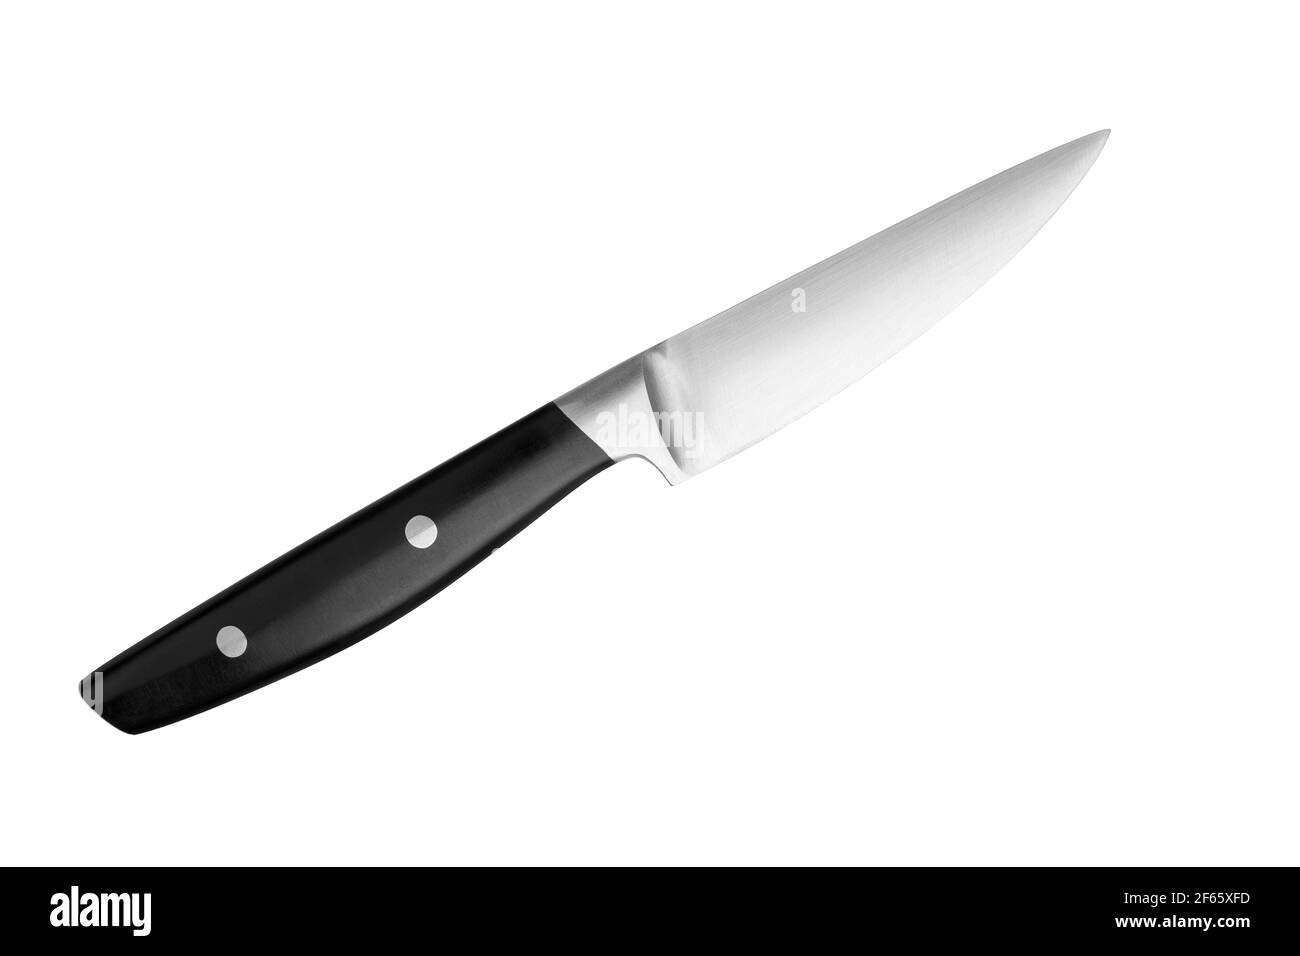 Cầm trên tay chiếc dao bào thép với tay cầm nhựa đen nền trắng, bạn sẽ cảm nhận được sự chắc chắn và thoải mái khi sử dụng. Hãy xem hình ảnh để thấy được độ sắc bén của lưỡi dao và độ bền bỉ của tay cầm.